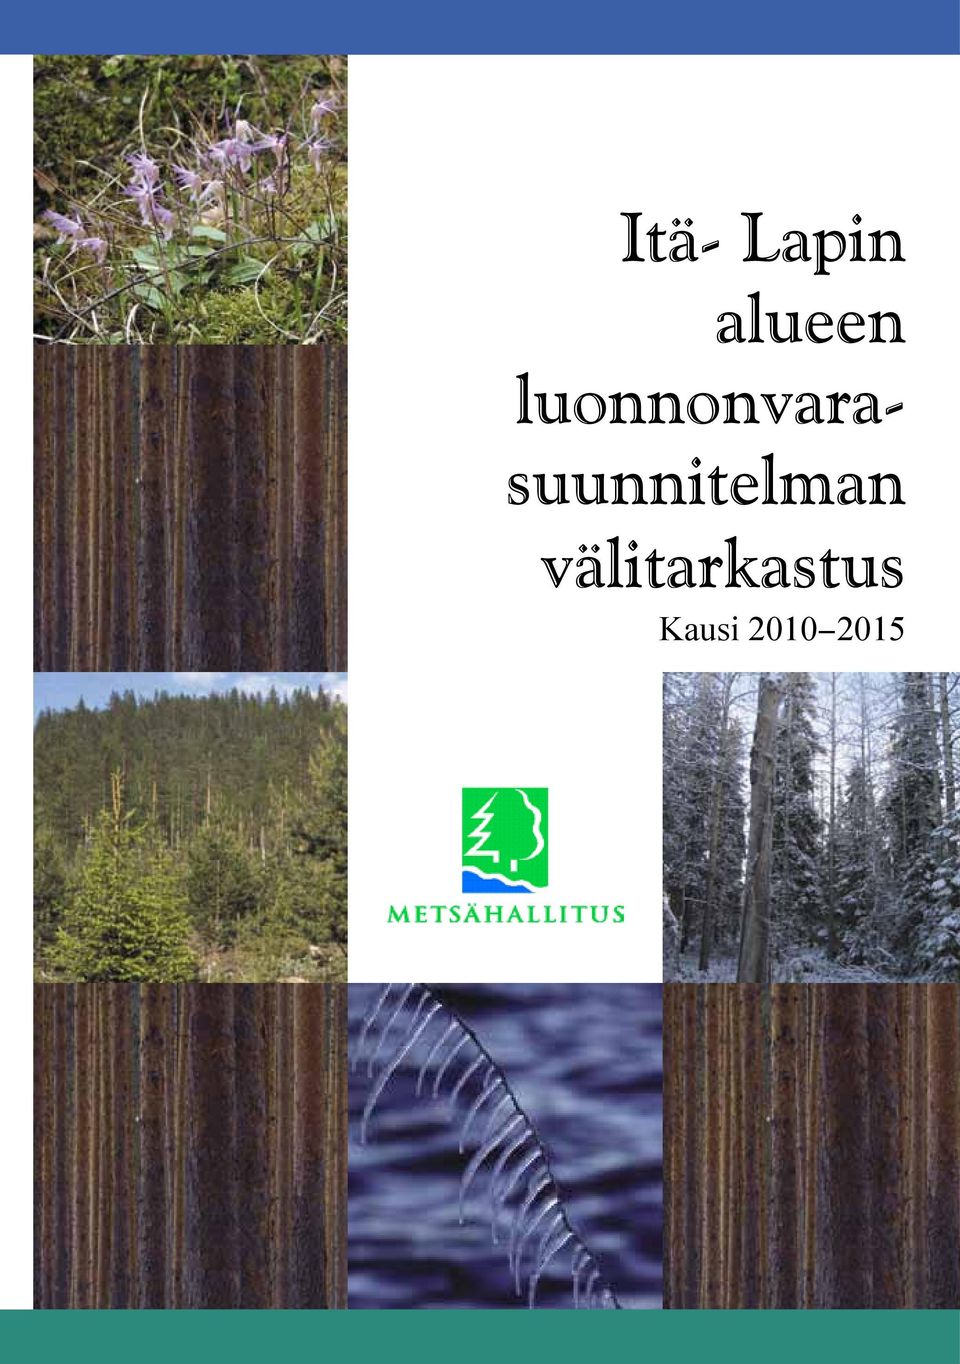 Kausi 2010-2015 Metsähallitus Itä-